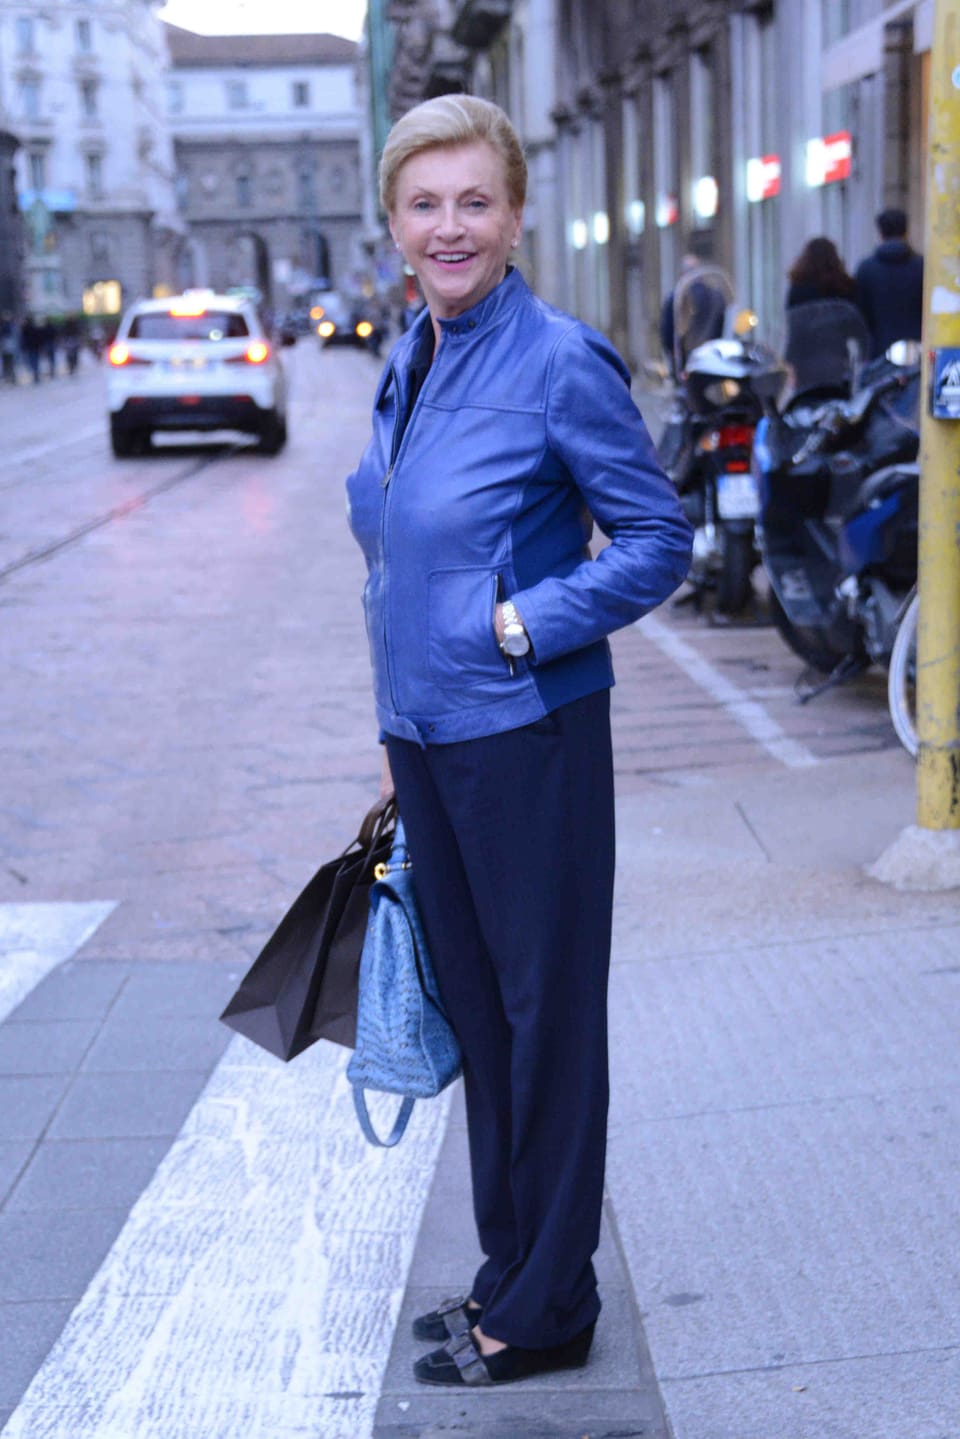 Michelle Hunzikers Mutter in einer blauen Lederjacke vor einem Fussgängerstreifen stehend und die Kamera lachend. Sie trägt zwei Taschen.